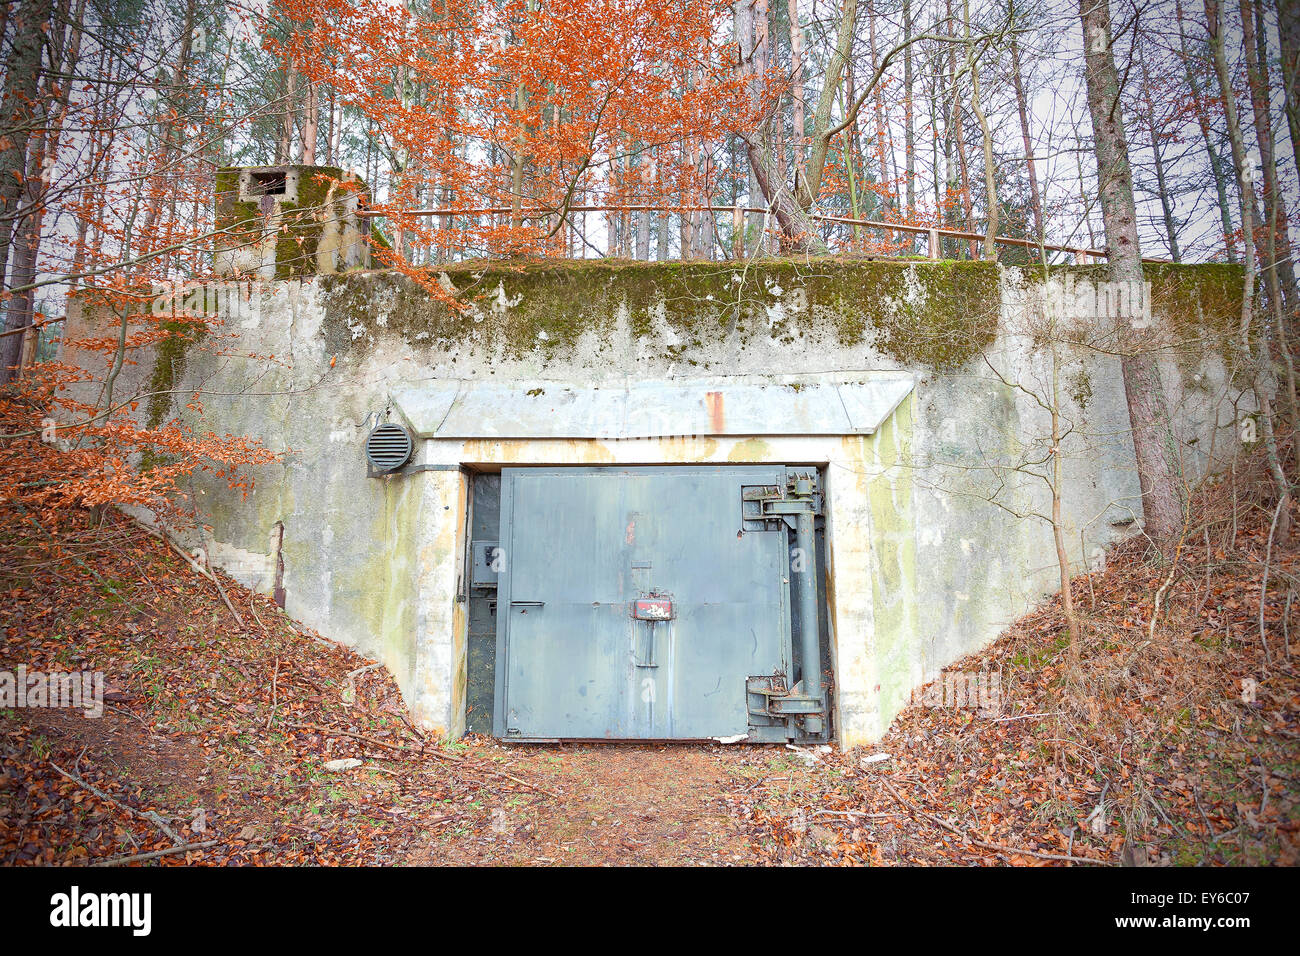 Ancienne guerre froide bunker en forêt, Podborsko en Pologne. Banque D'Images